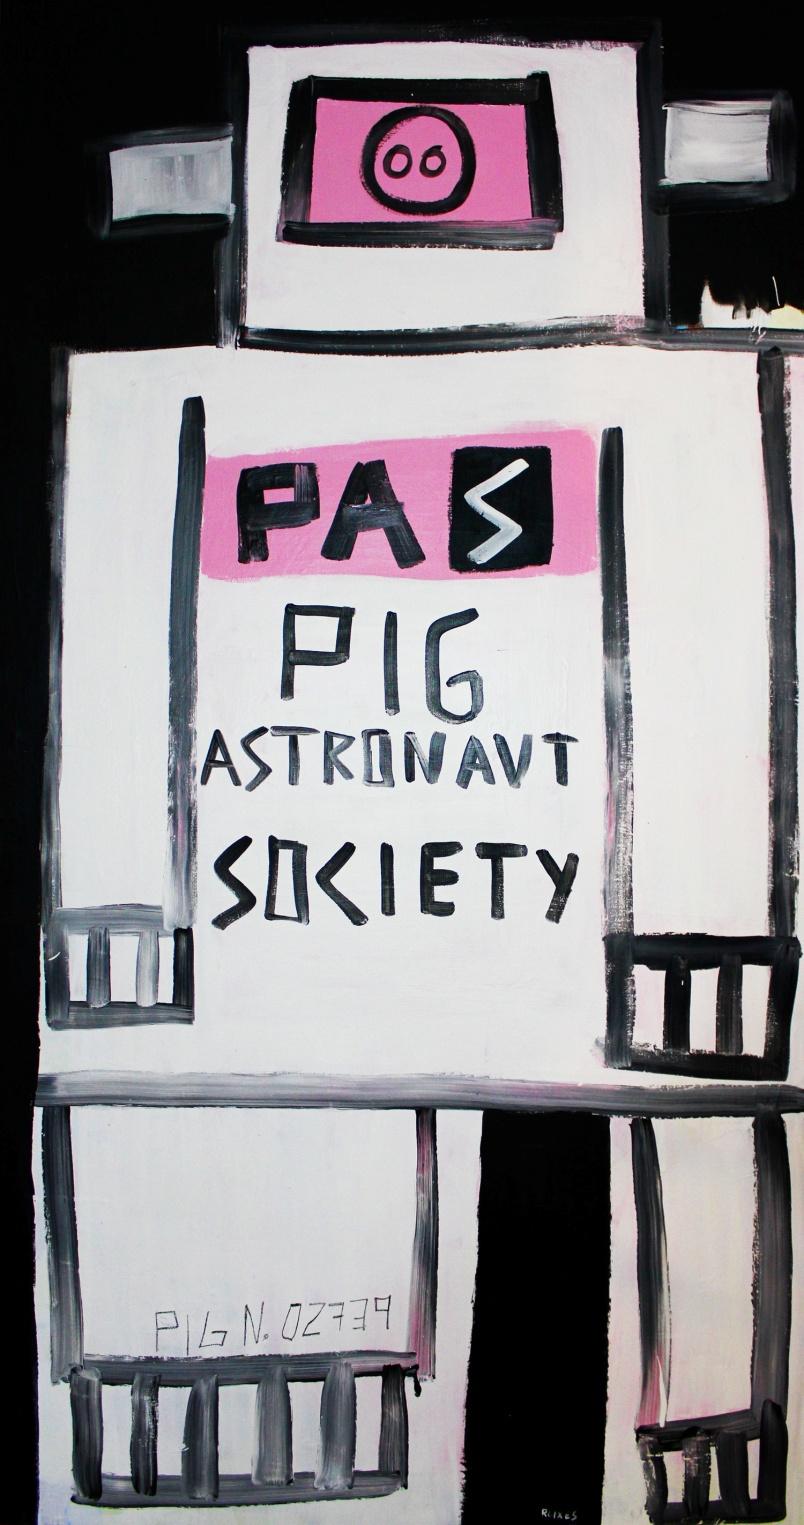 ANTONI ROIXES PIG ASTRONAUT SOCIETY 2012